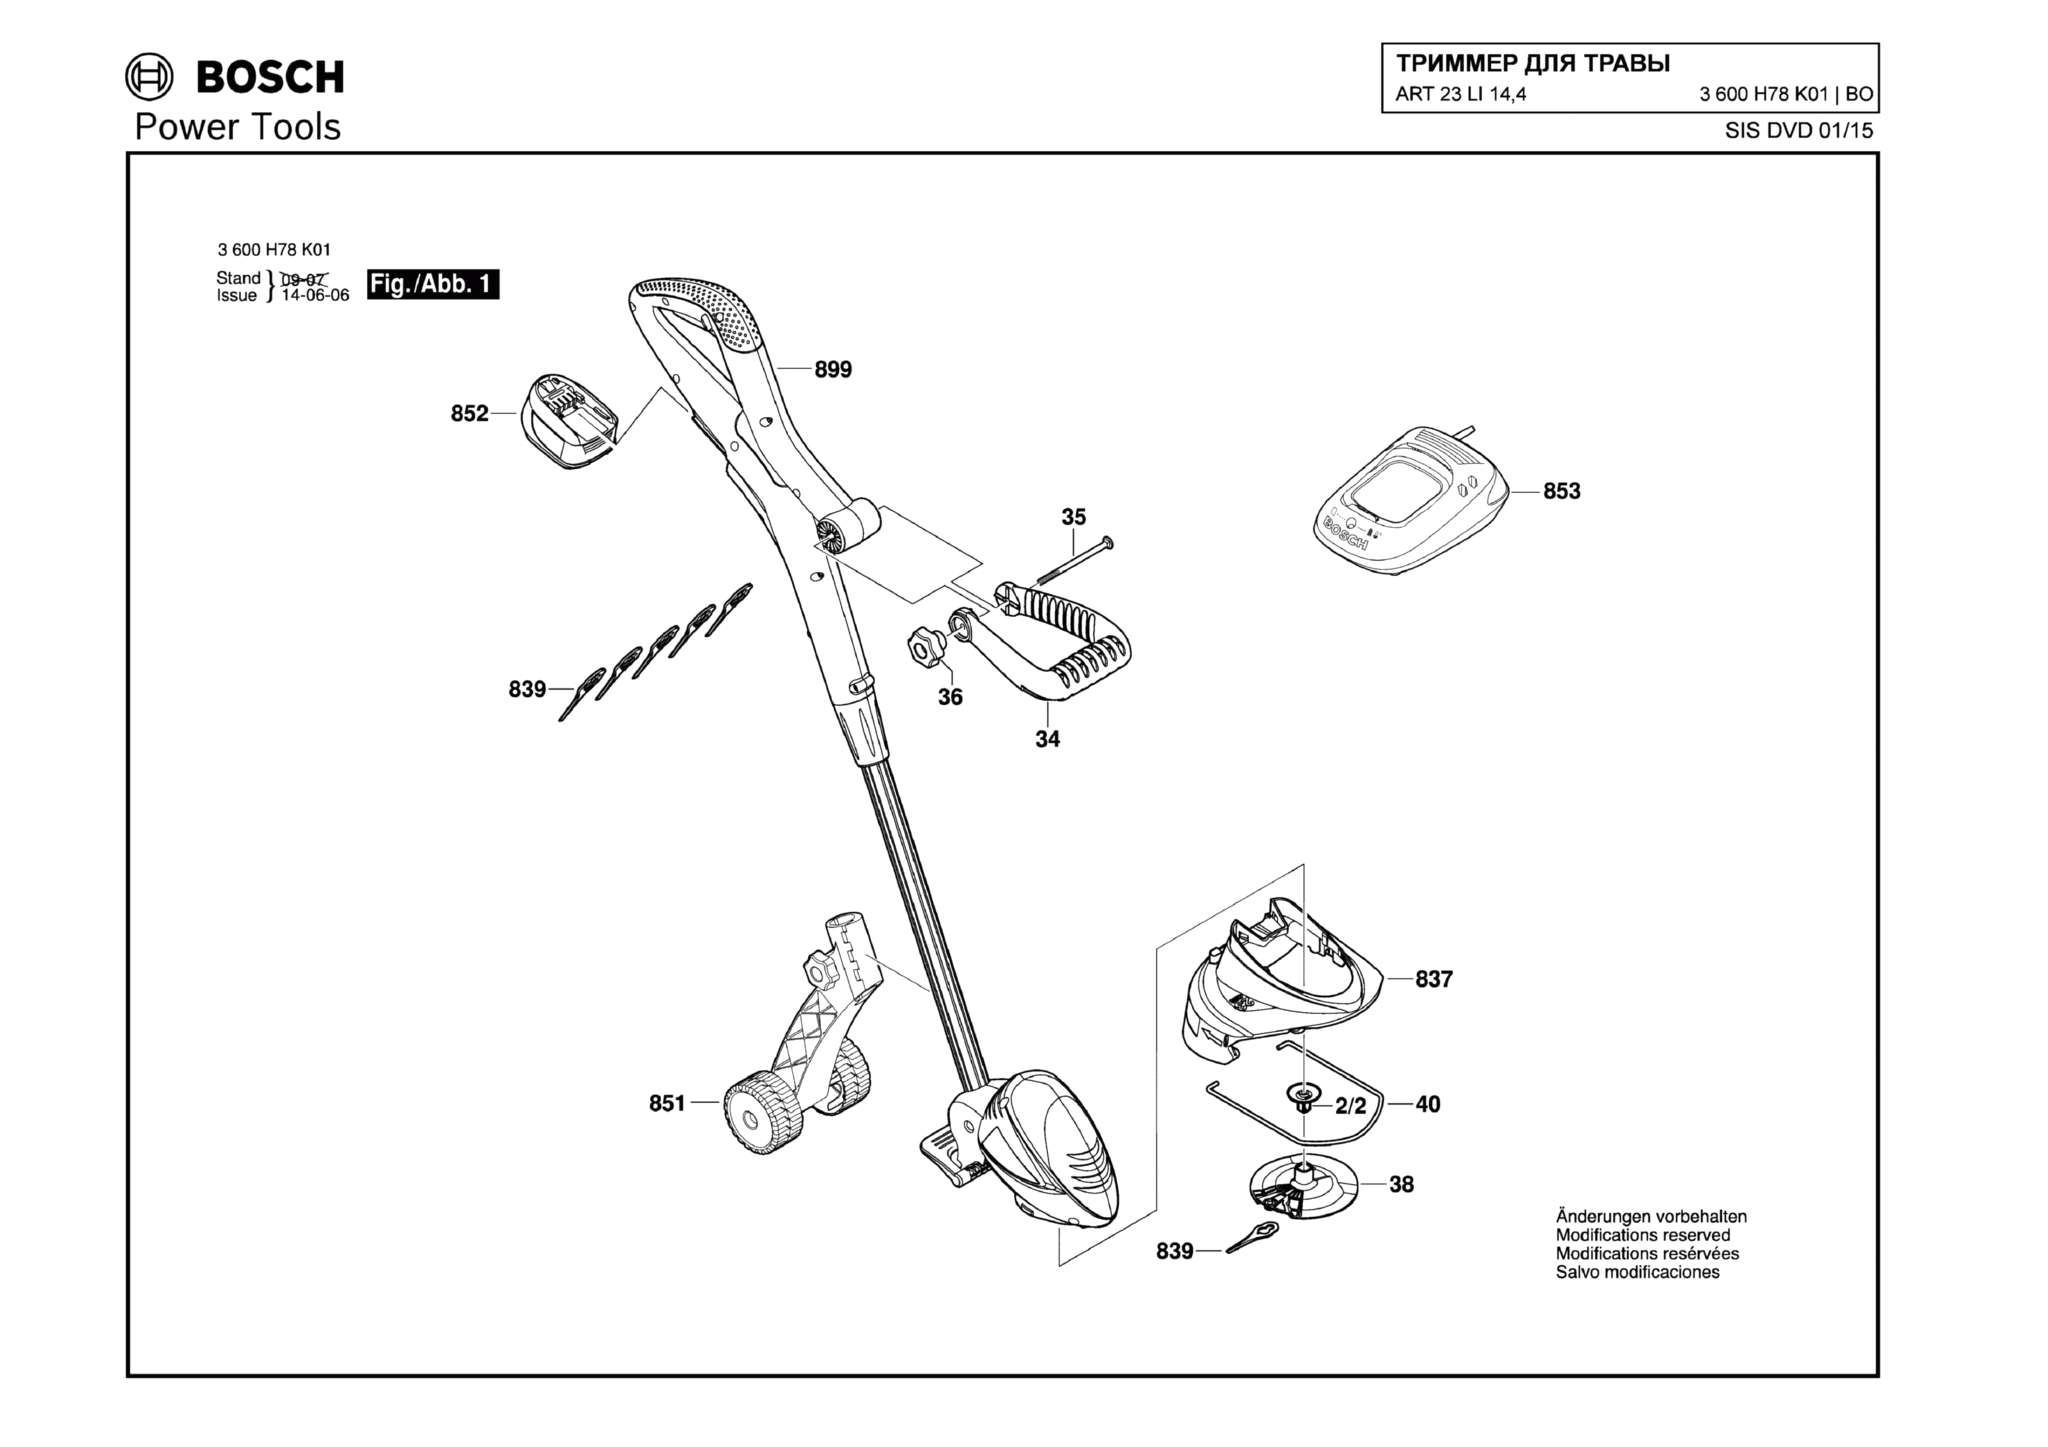 Запчасти, схема и деталировка Bosch ART 23 LI 14,4 (ТИП 3600H78K01)